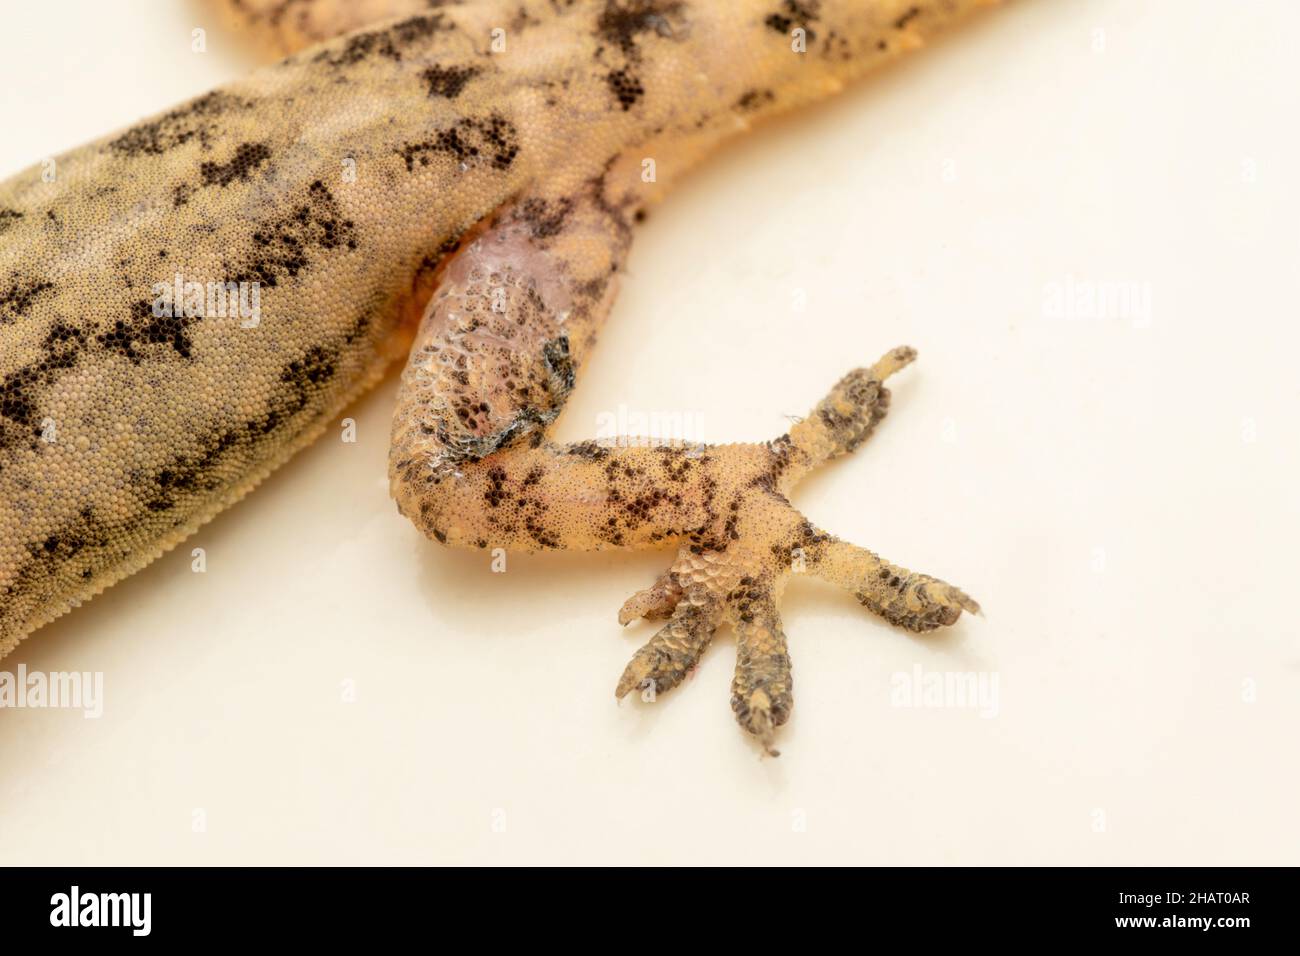 Pierna de la corteza india gecko, Hemidactylus leschenaultii, Satara, Maharashtra, India Foto de stock